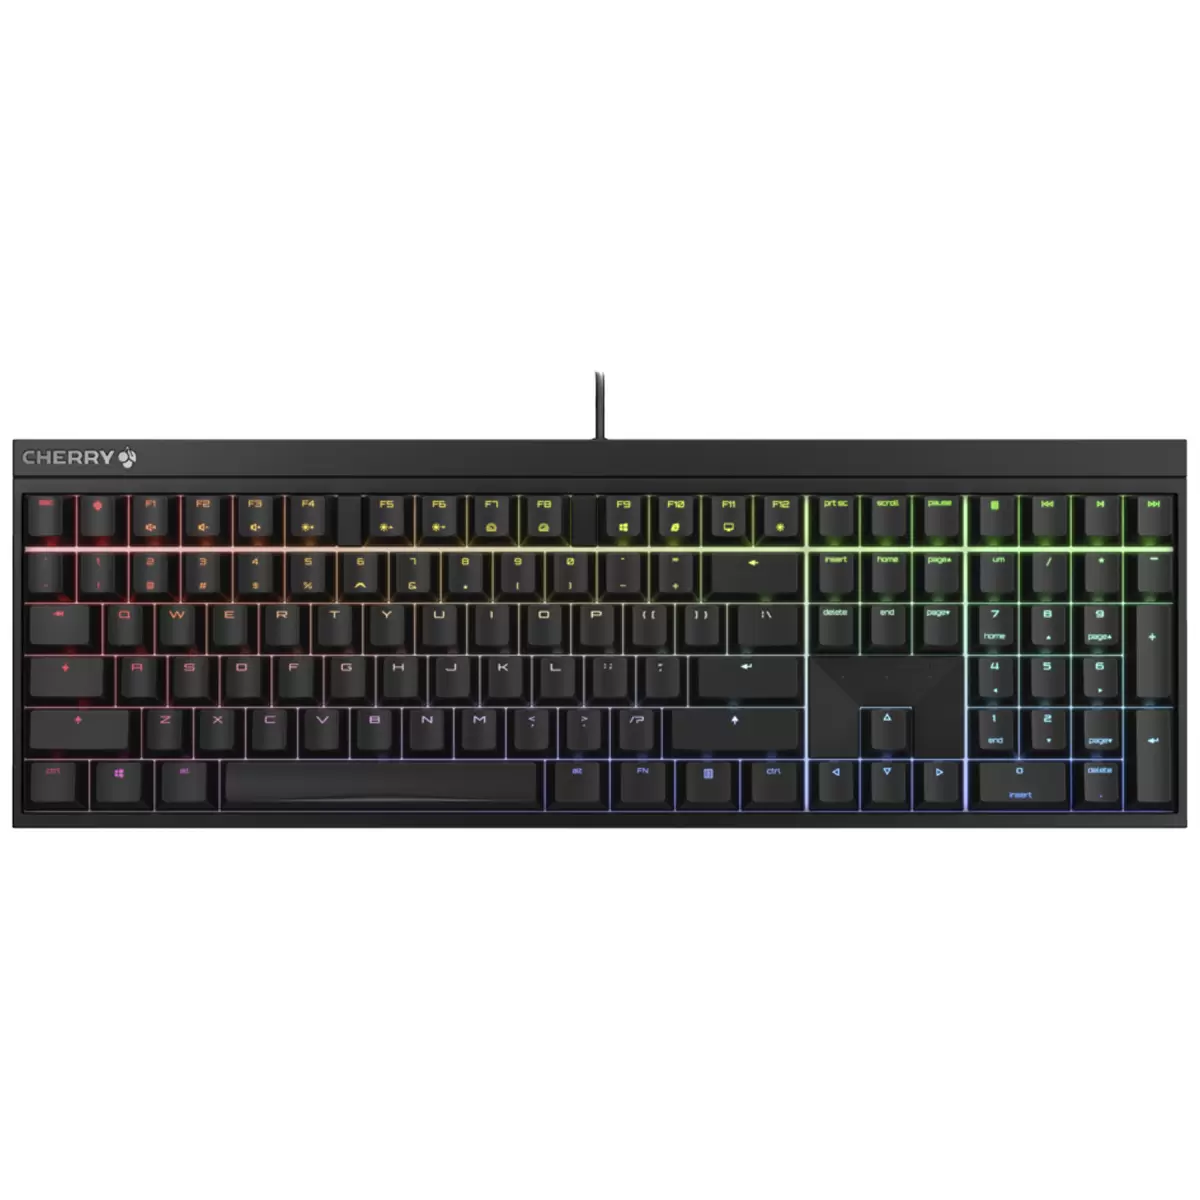 CHERRY MX 2.0S RGB Gaming Keyboard Black  G80-3821LYAEU-2